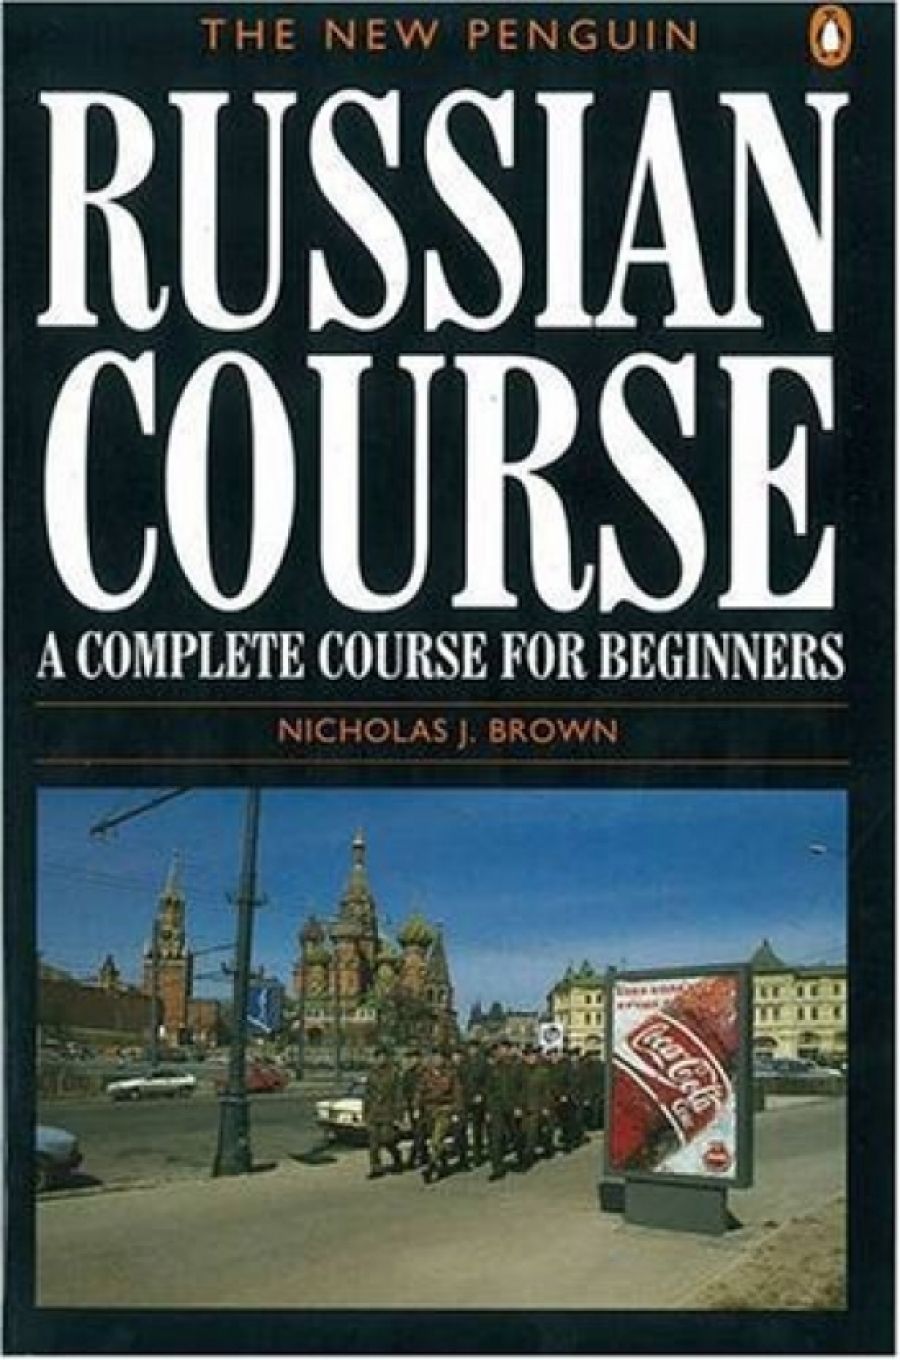 Brown, Nicholas J. Penguin Russian Course, New 